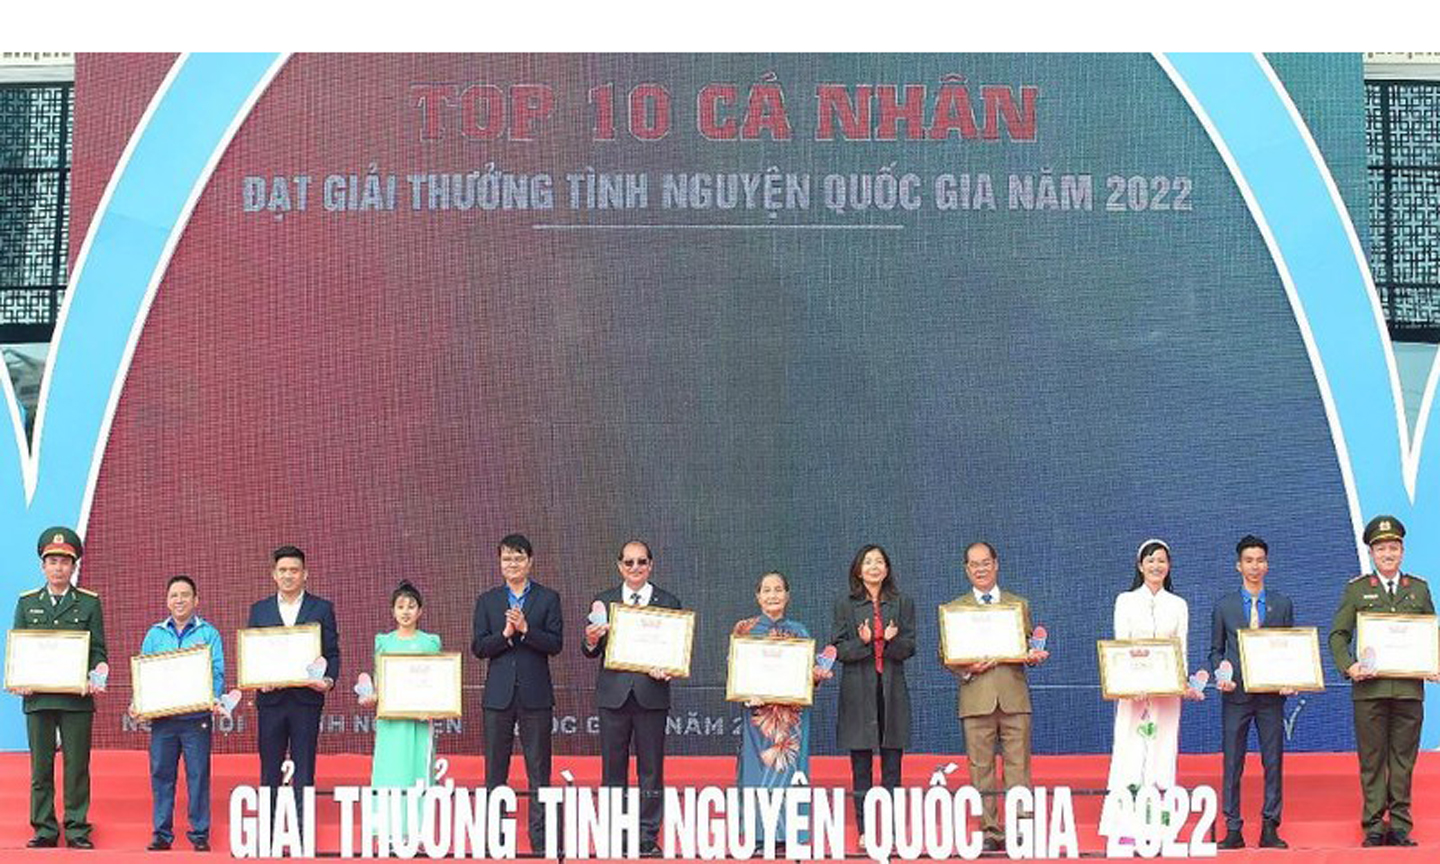 Đồng chí Bùi Quang Huy, Ủy viên dự khuyết Trung ương Đảng, Bí thư thứ nhất Trung ương Đoàn (thứ 5 từ trái sang) trao Giải thưởng Tình nguyện quốc gia năm 2022 tặng 10 cá nhân tiêu biểu. 